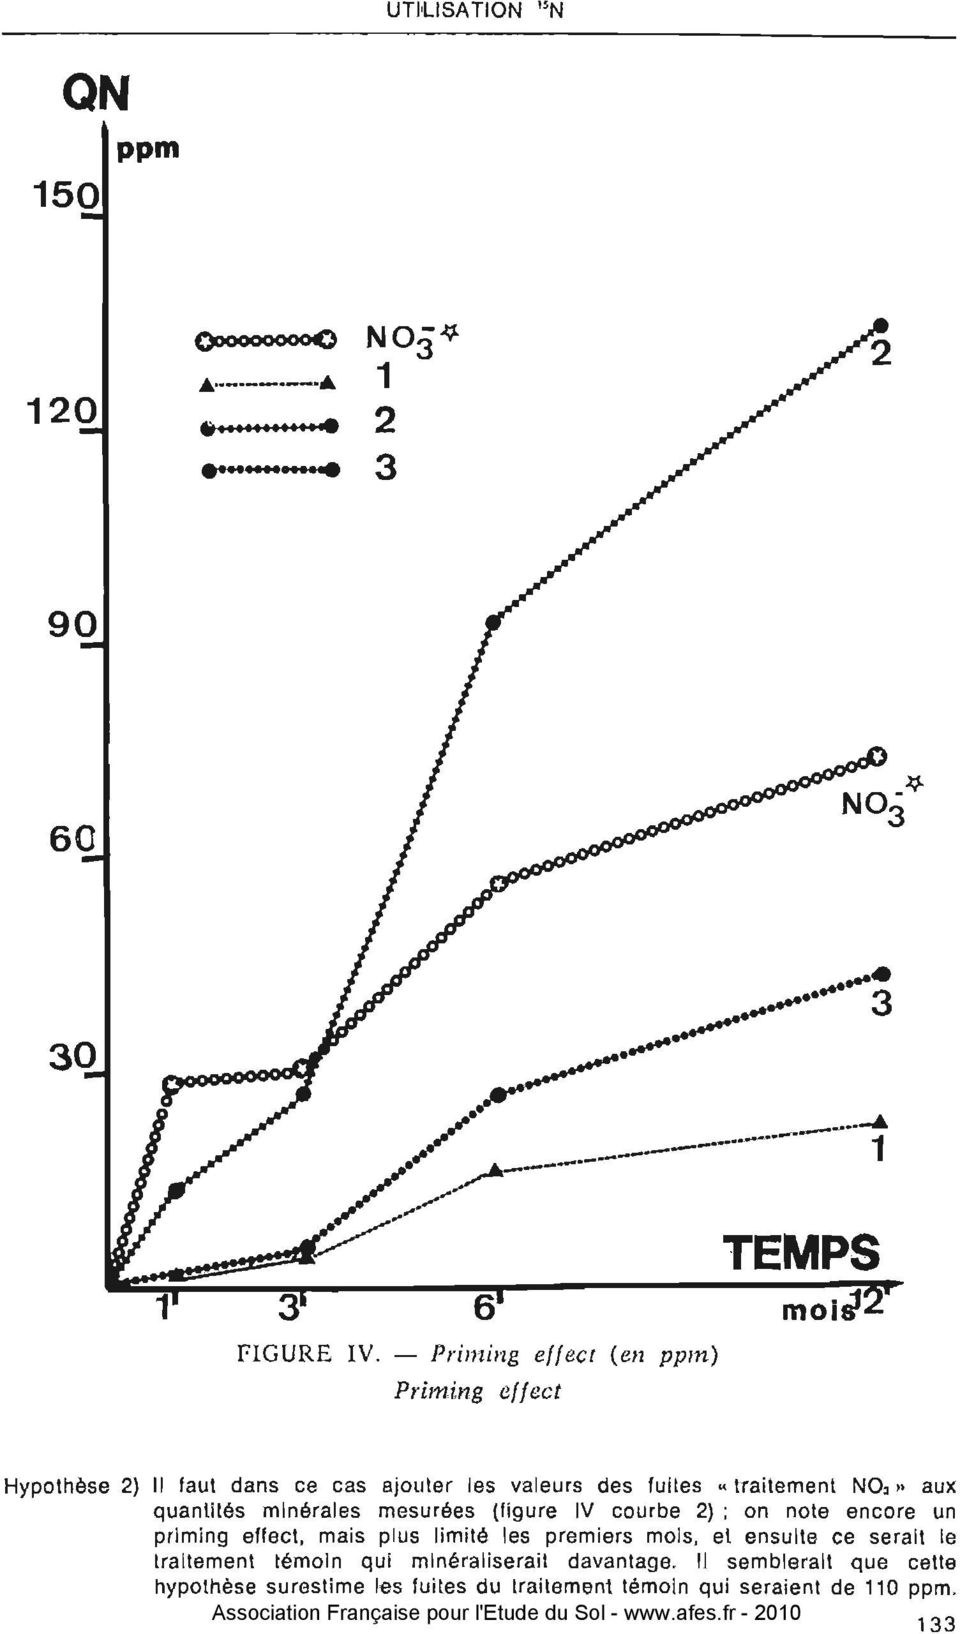 . traitement NO,,, aux quantités minérales mesurées (figure IV courbe 2); on note encore un prlmlng ellect, mais plus limité les premiers mois,